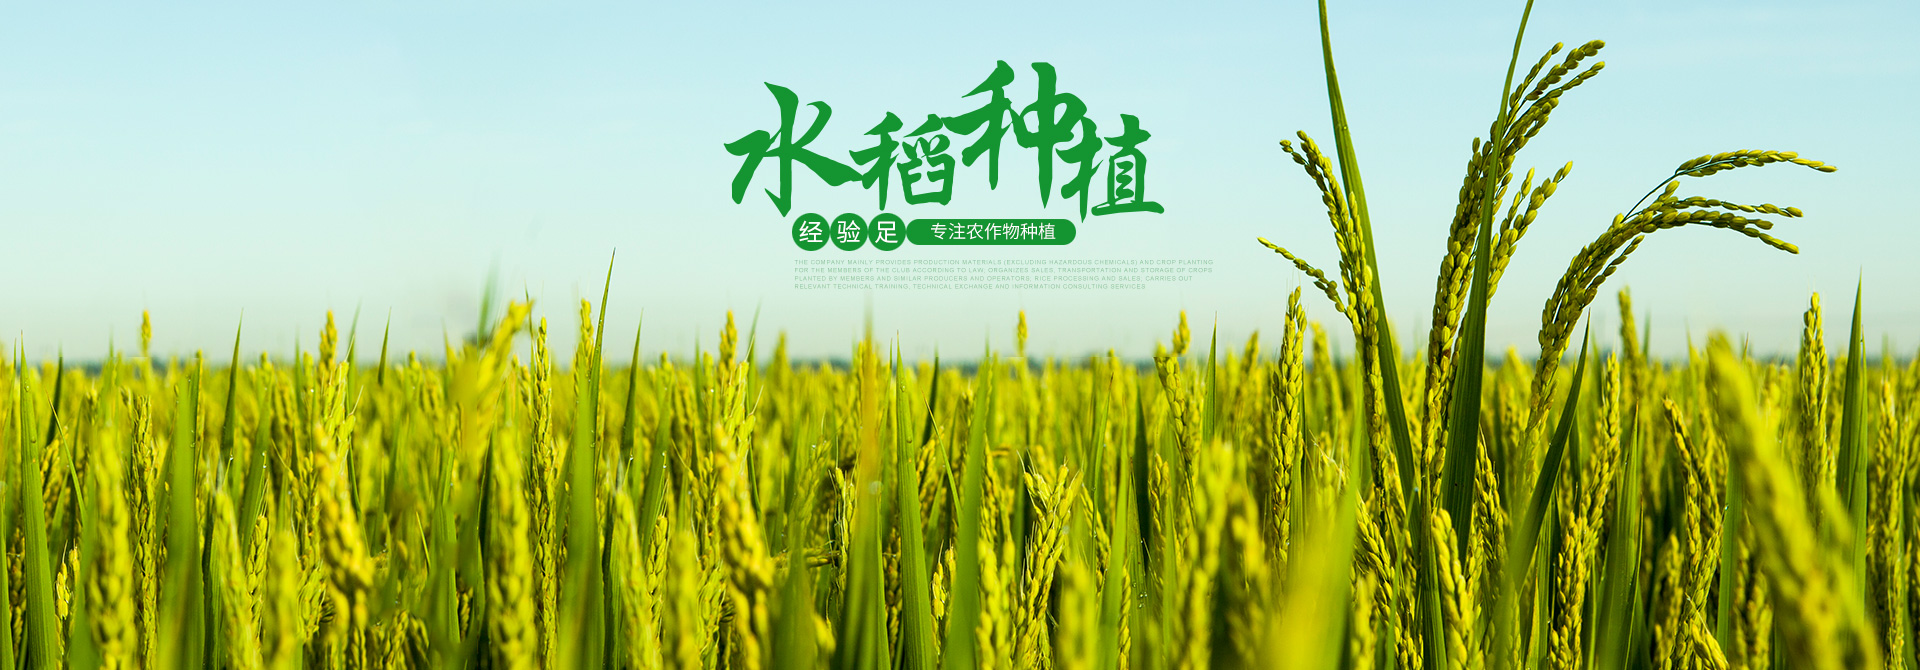 桃源县团结农业专业合作社-农作物种植-大米加工-菜籽油供应